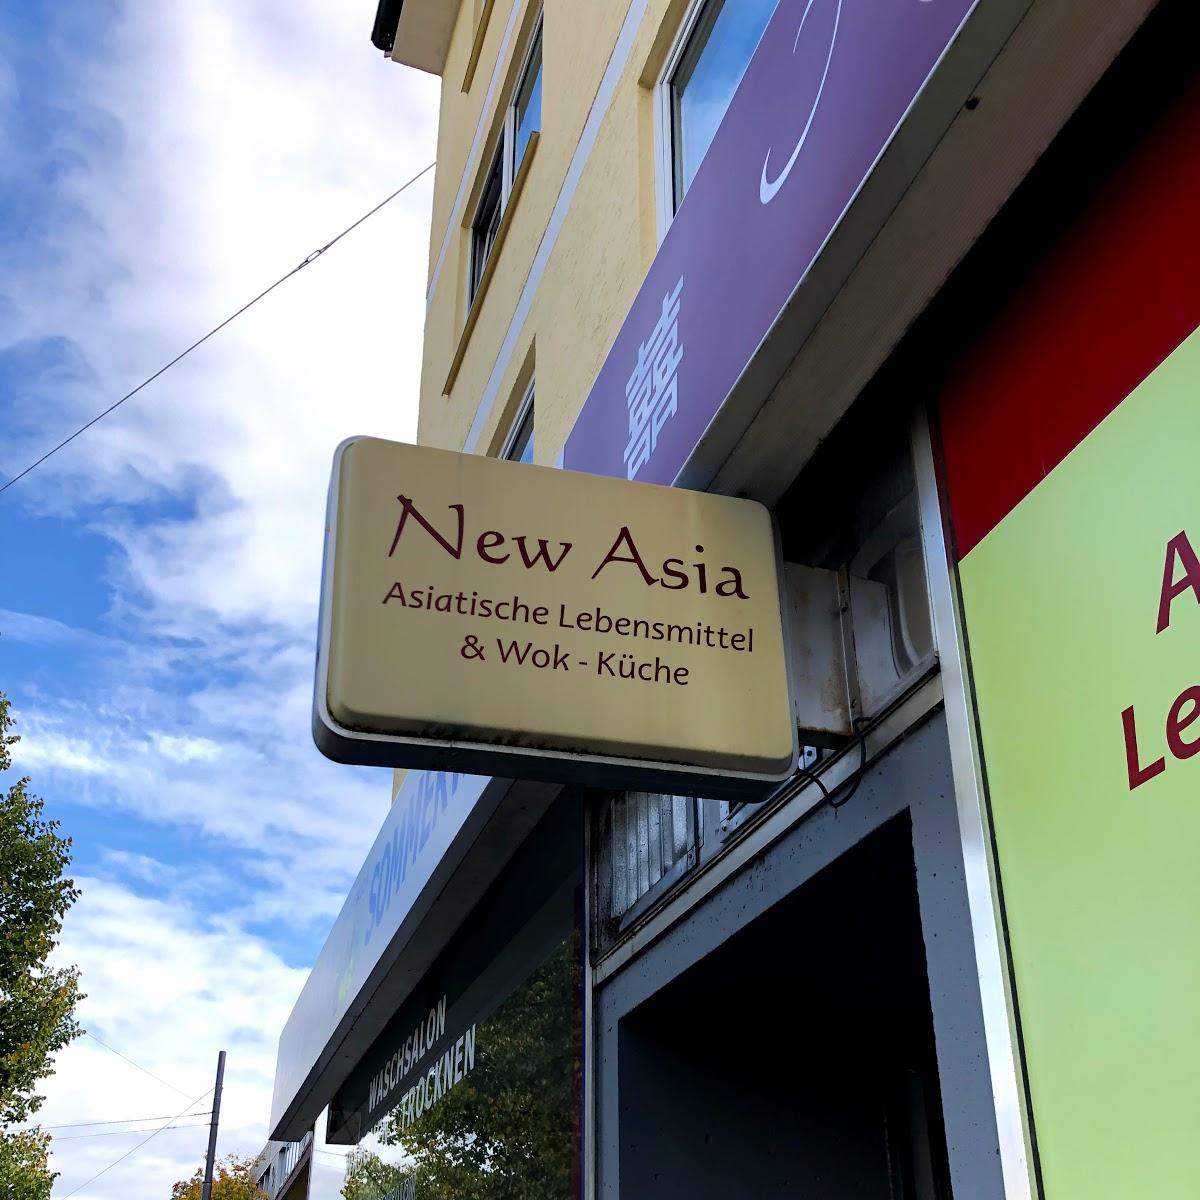 Restaurant "Newasia Asiamarkt und Asiaimbiss Asiashop" in München